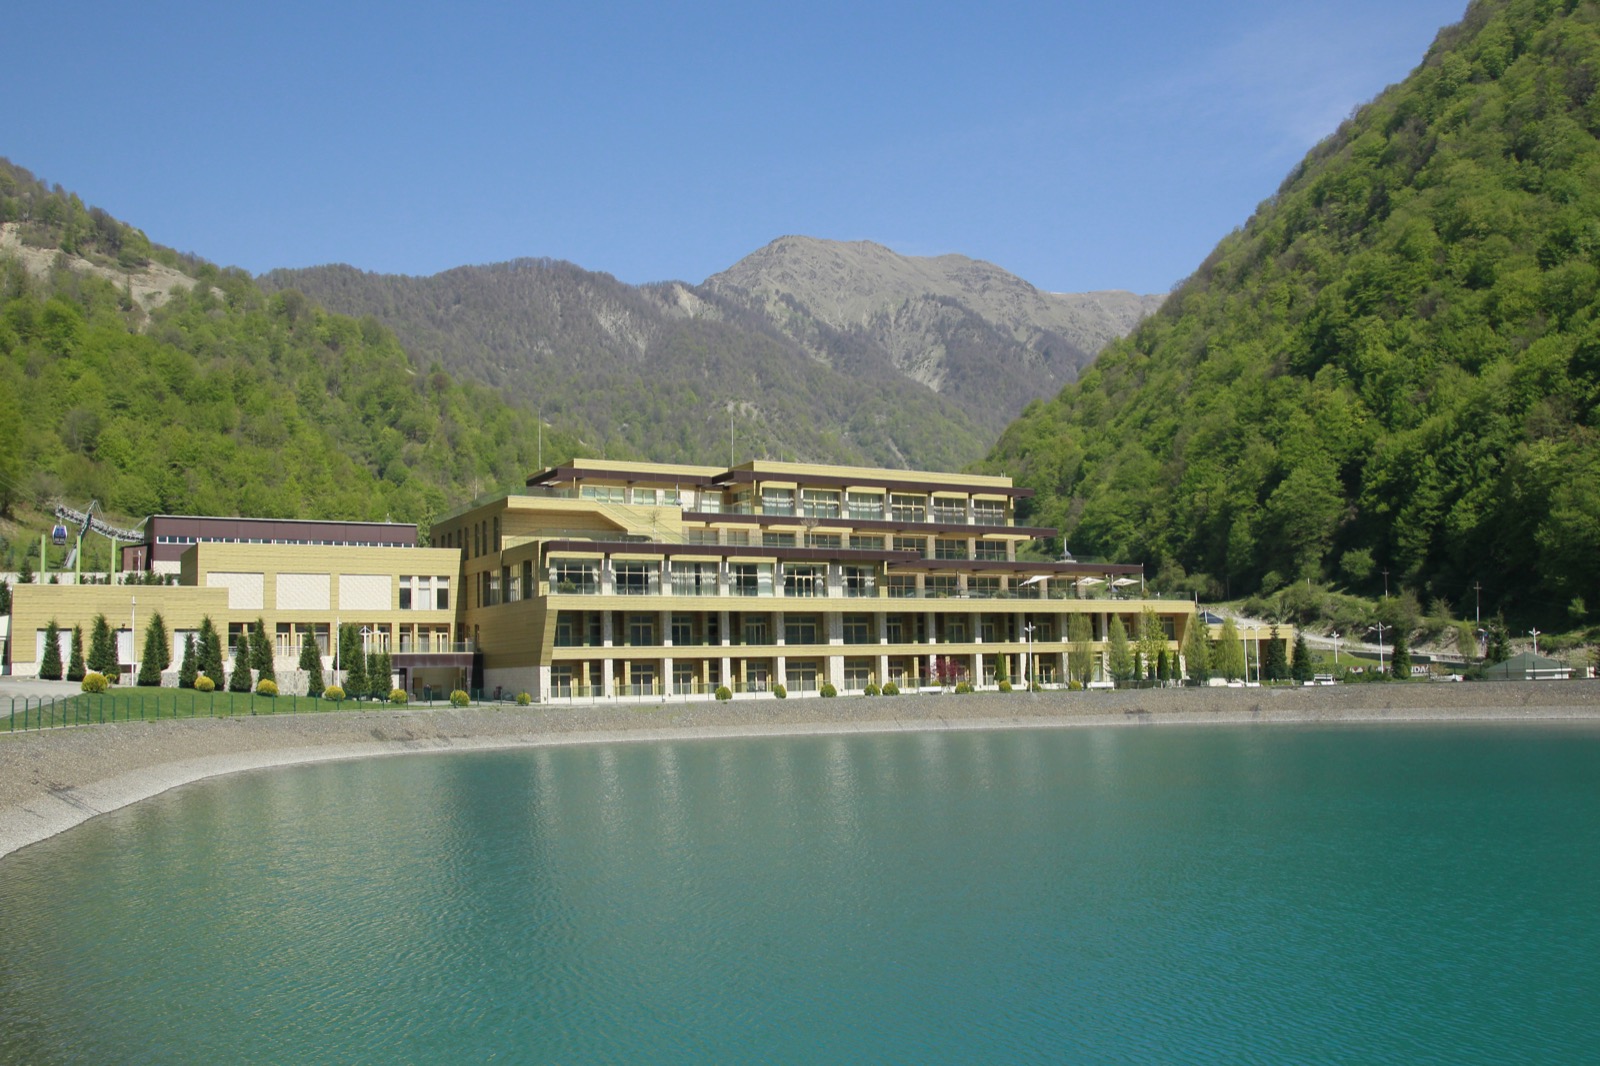 Qafqaz Tufandag Hotel